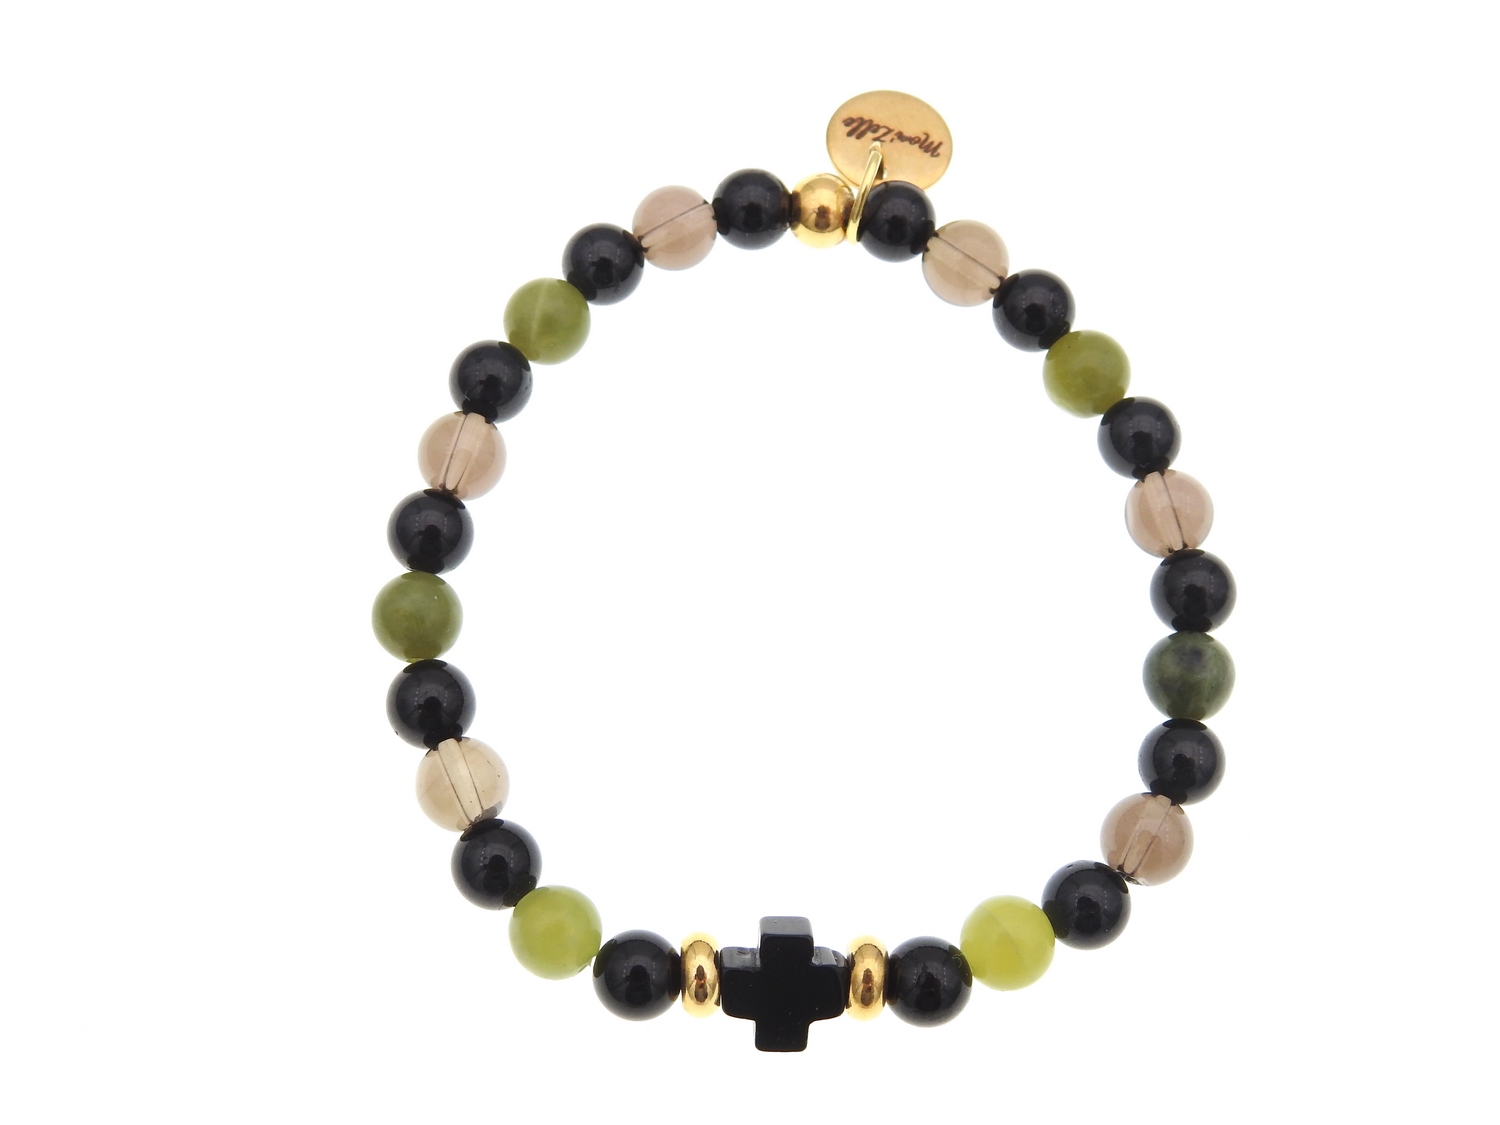 Bracelet tendance BENDITA composé de pierres fines avec croix en agate noire et perles dorées MMC056 BENDITA 1